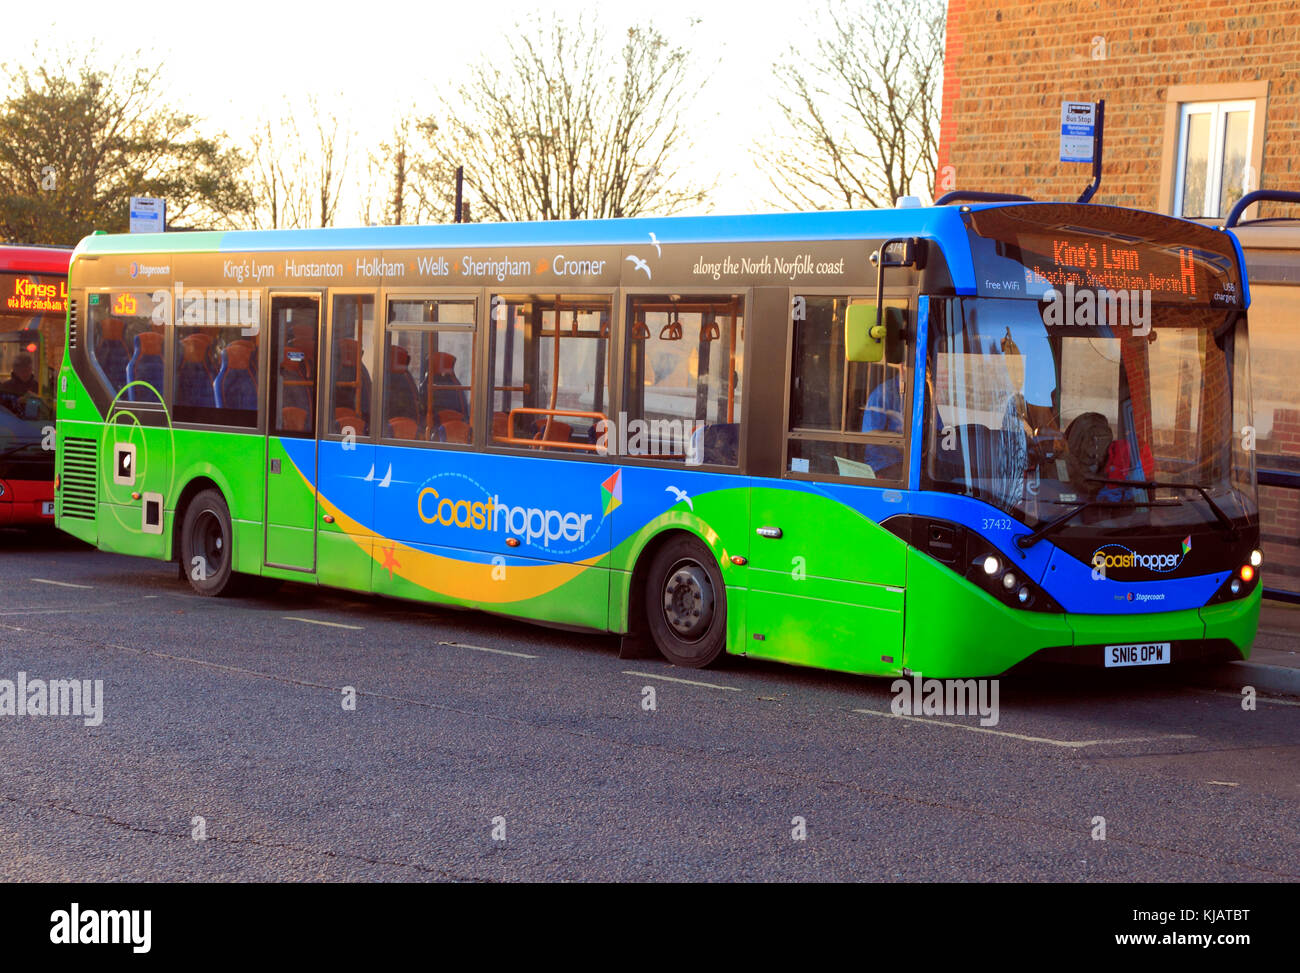 Coasthopper Bus, vehicle, public transport, Kings Lynn, Heacham, Snettisham, Dersingham, Hunstanton, Holkham, Wells, Sheringham, North Norfolk Stock Photo